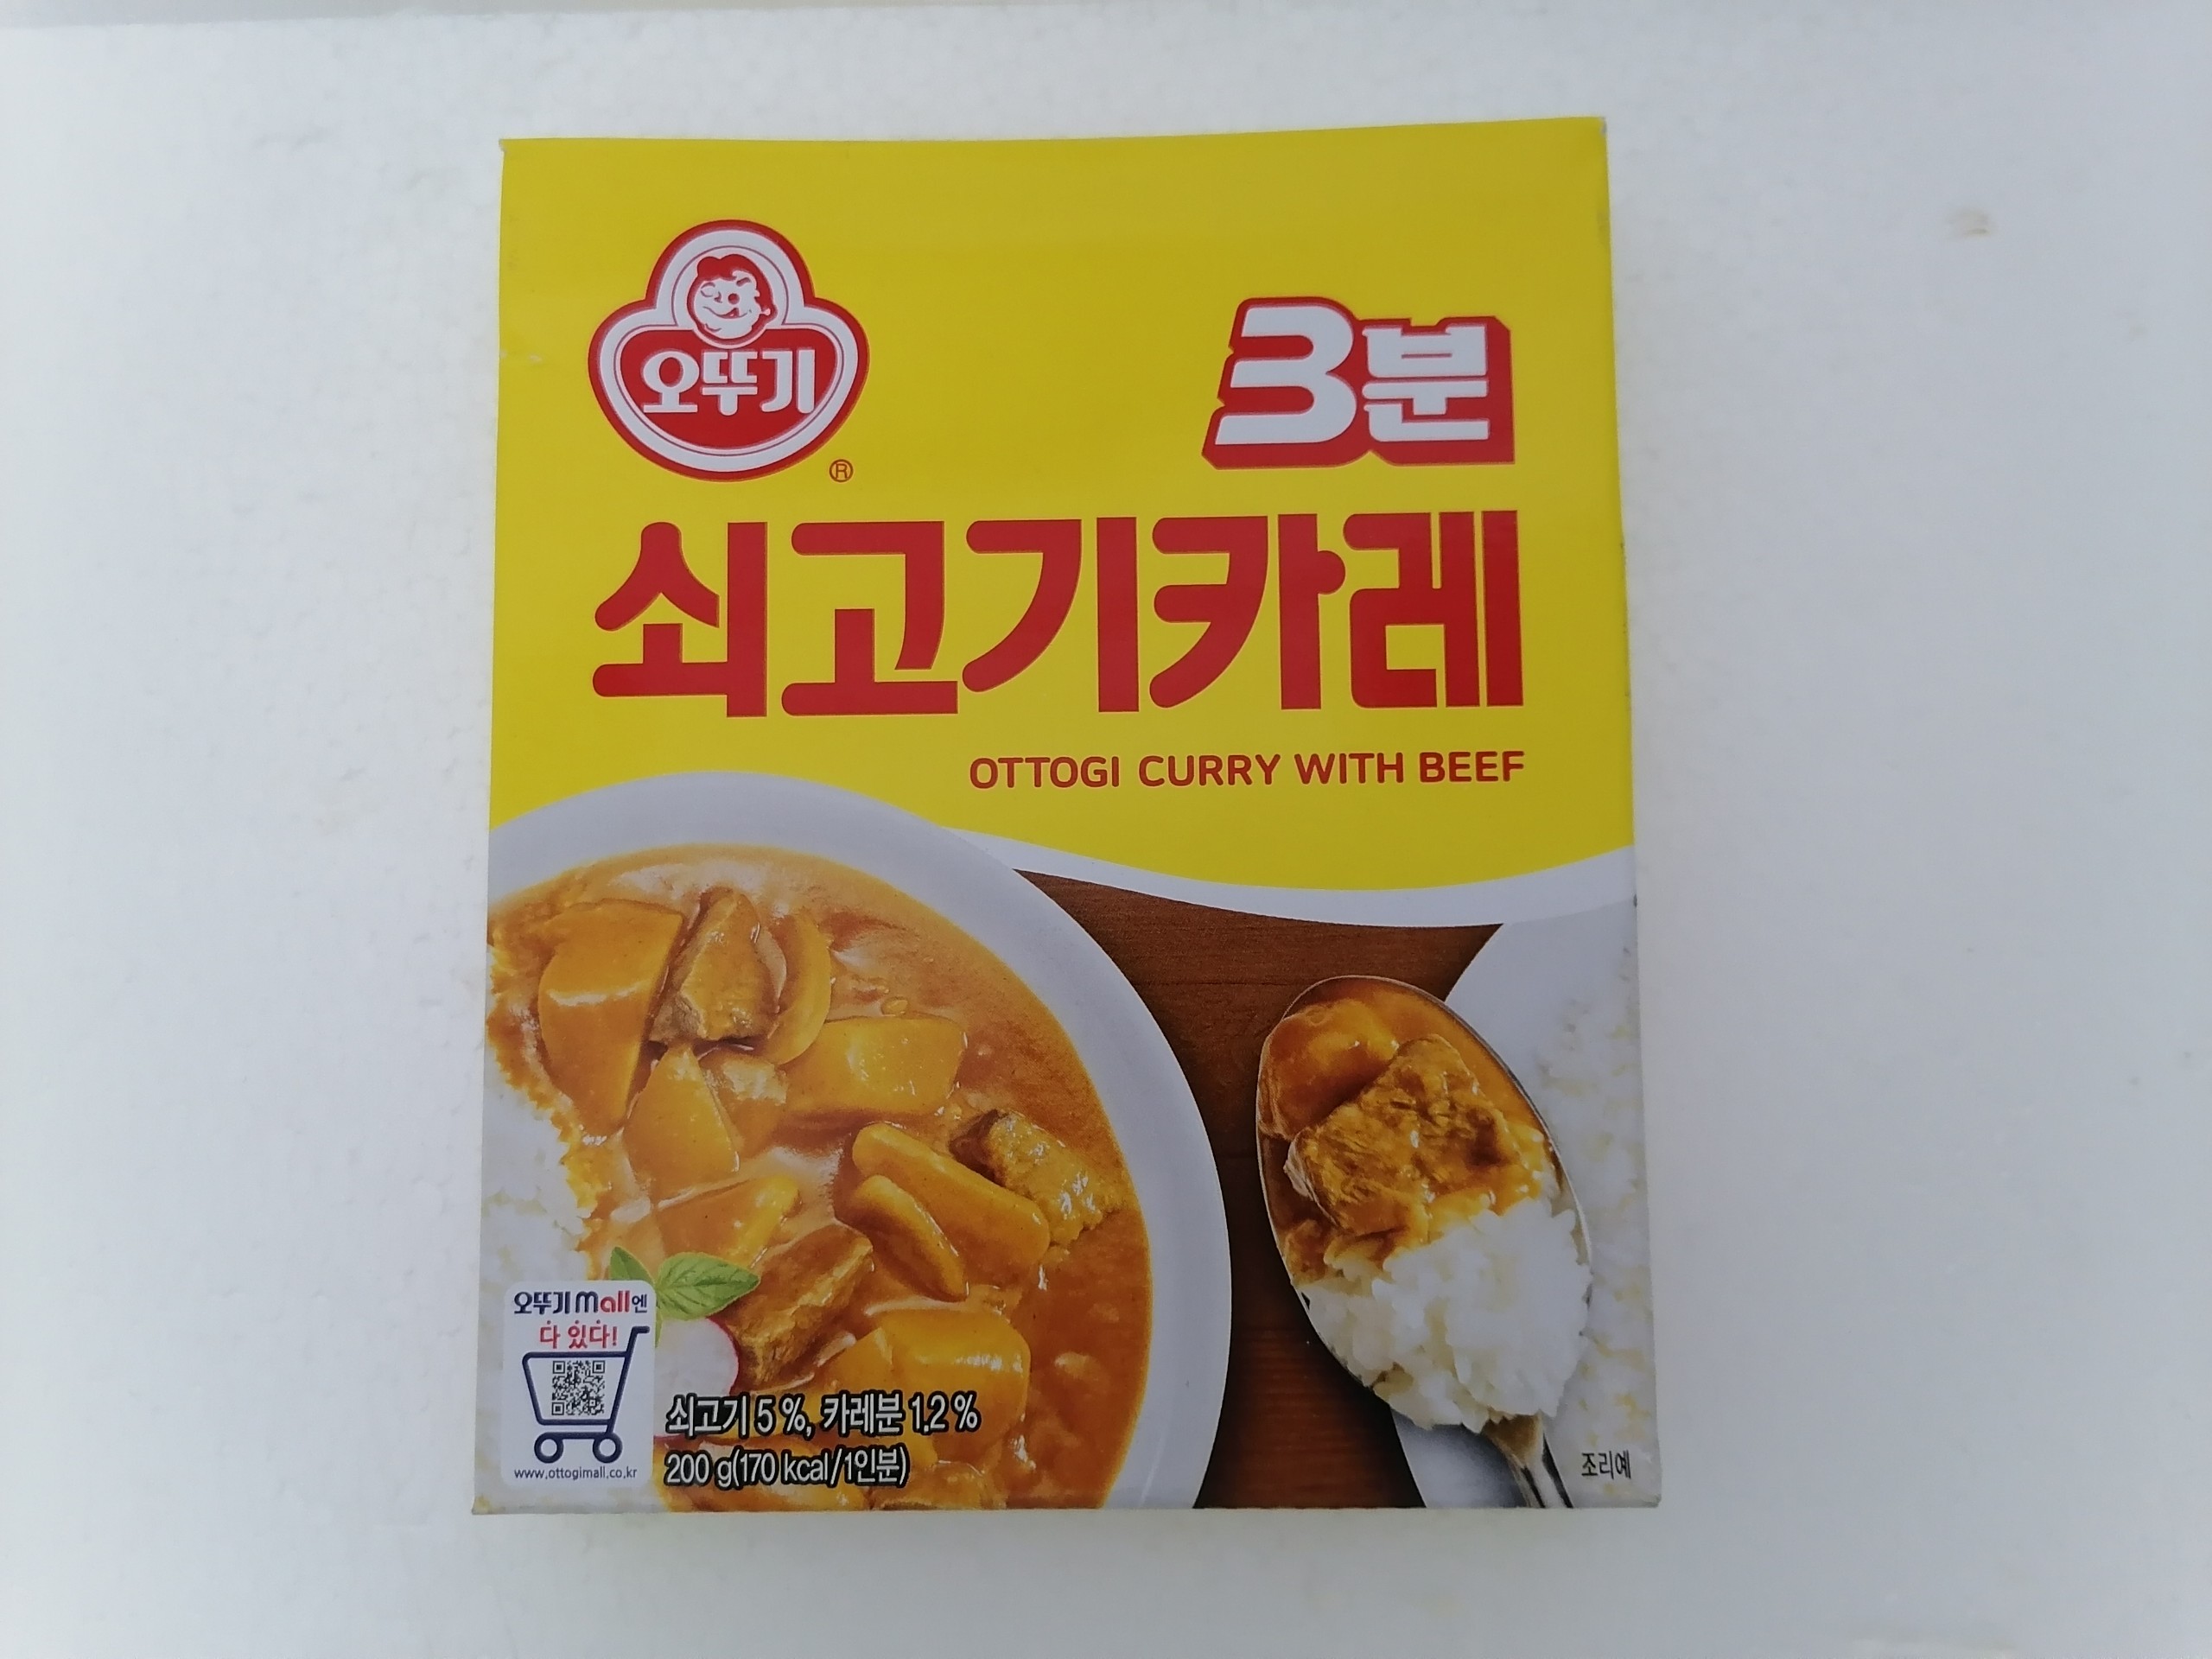 [200g] Xốt Cà ri Bò [Korea] OTTOGI Curry With Beef (bph-hk)